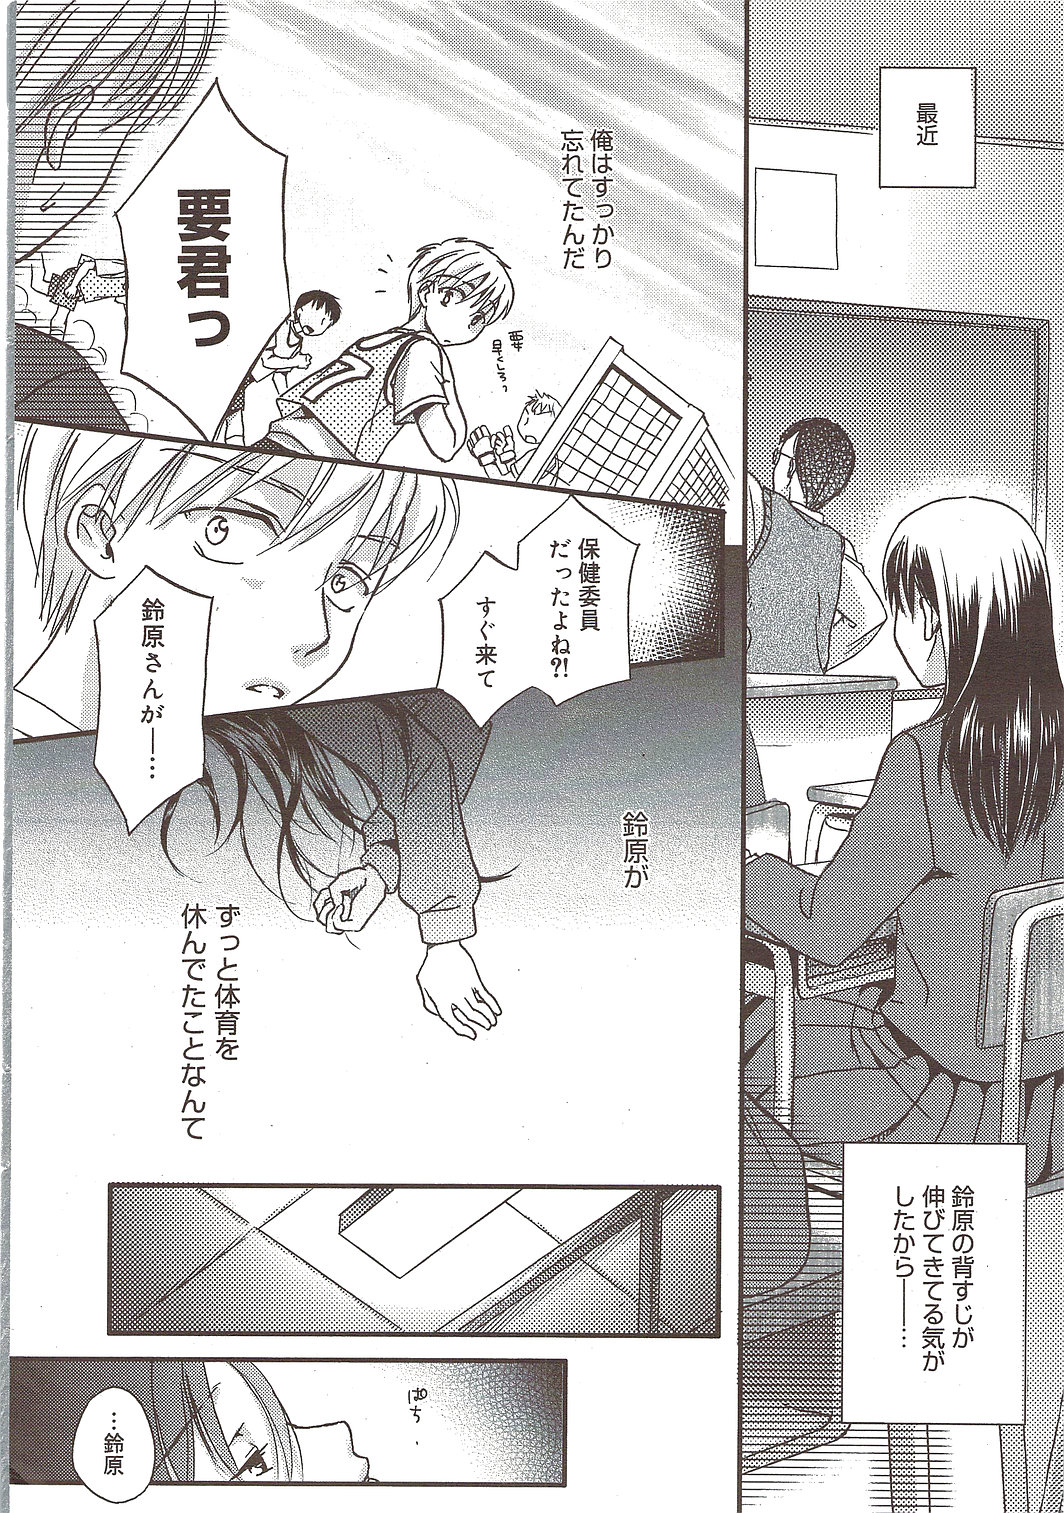 Manga Bangaichi 2009-12 漫画ばんがいち 2009年12月号